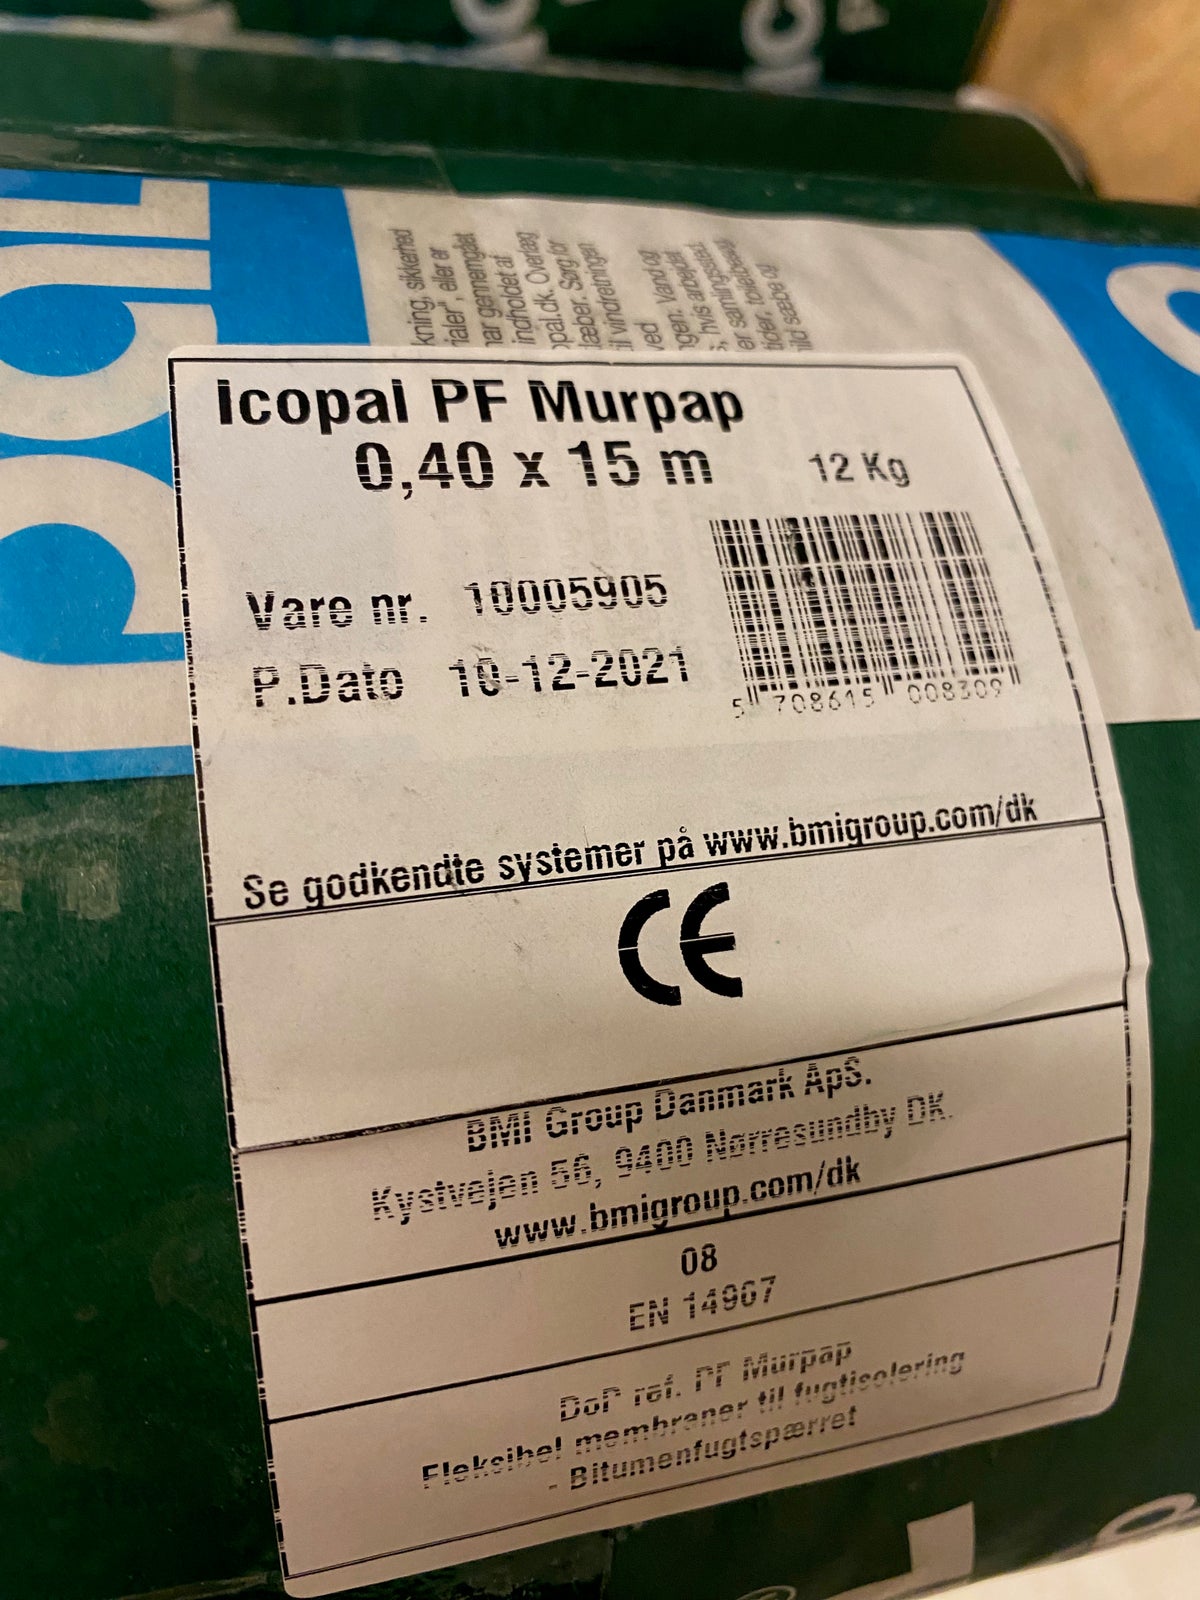 Icopal PF Murpap